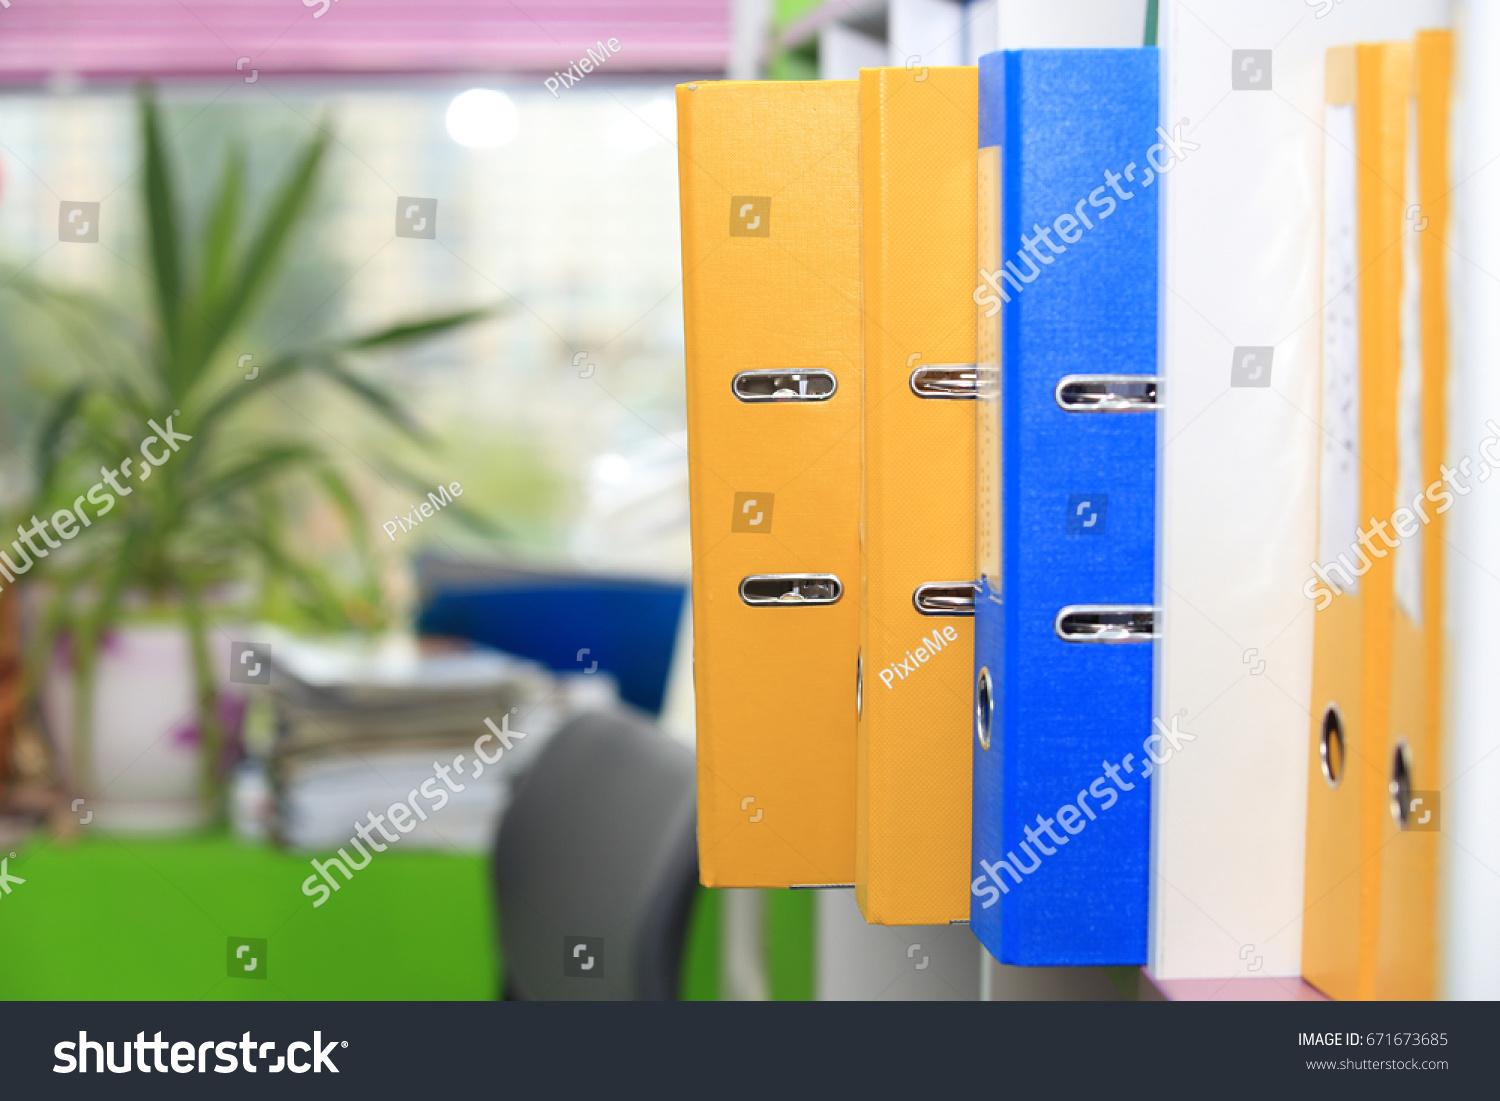 Folders in office. Folders on office window background. #671673685